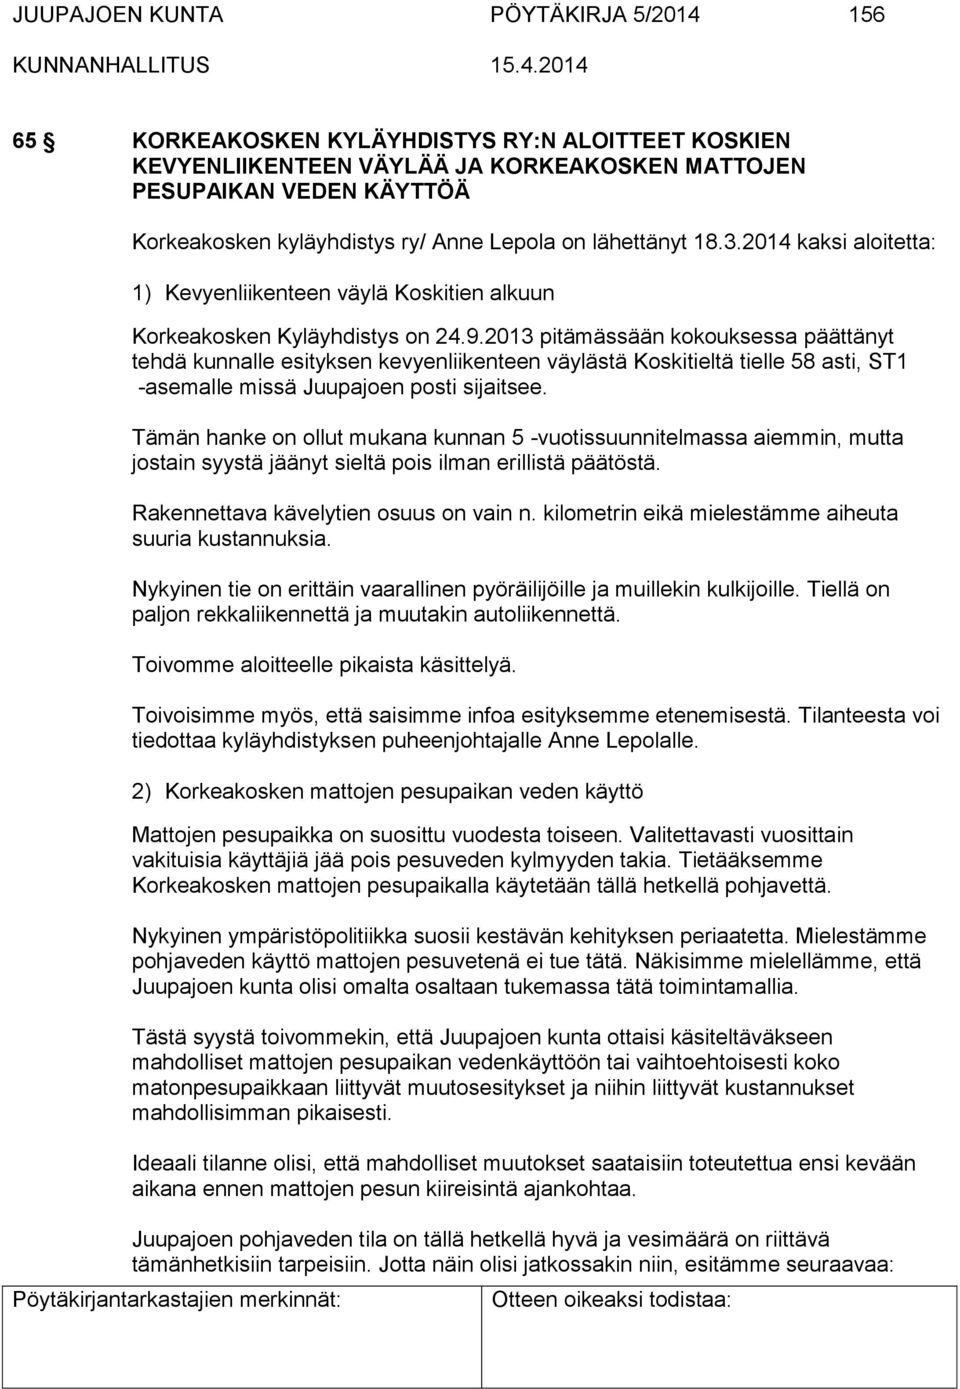 2013 pitämässään kokouksessa päättänyt tehdä kunnalle esityksen kevyenliikenteen väylästä Koskitieltä tielle 58 asti, ST1 -asemalle missä Juupajoen posti sijaitsee.